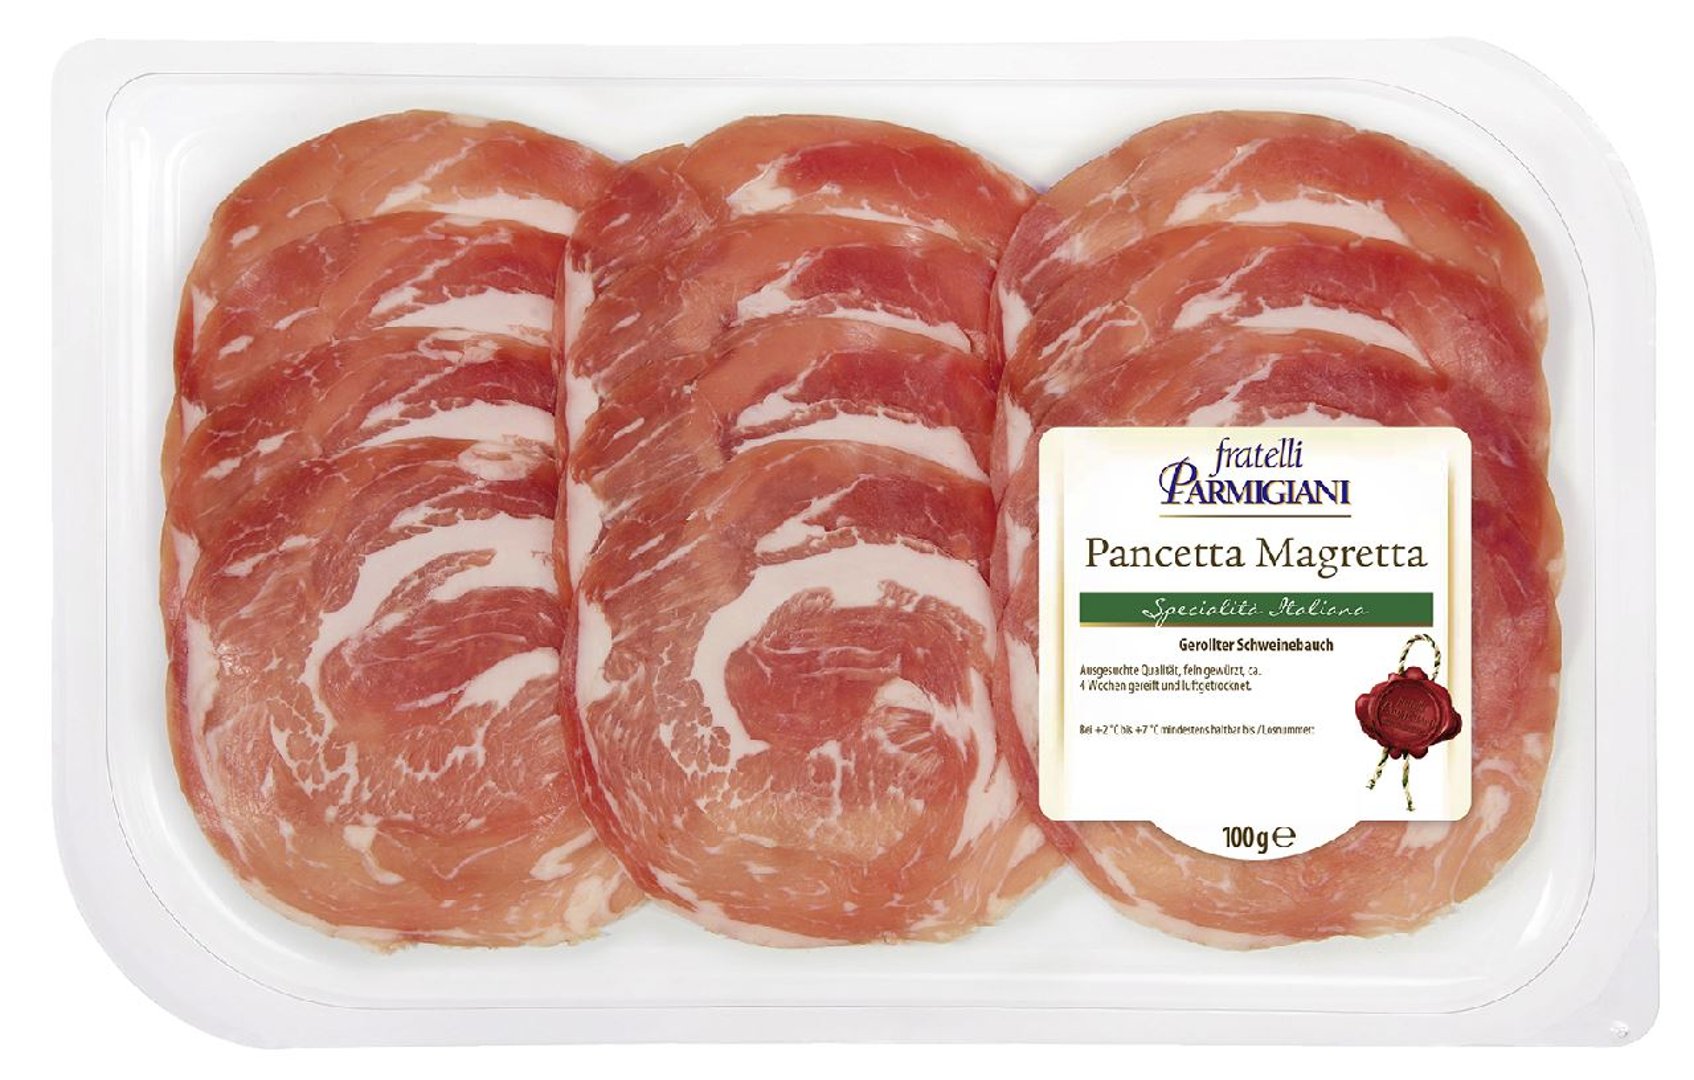 Fratelli - Parmigiani Pancetta Magretta Schweinebauch Schwein IT - 1 x 100 g Packung